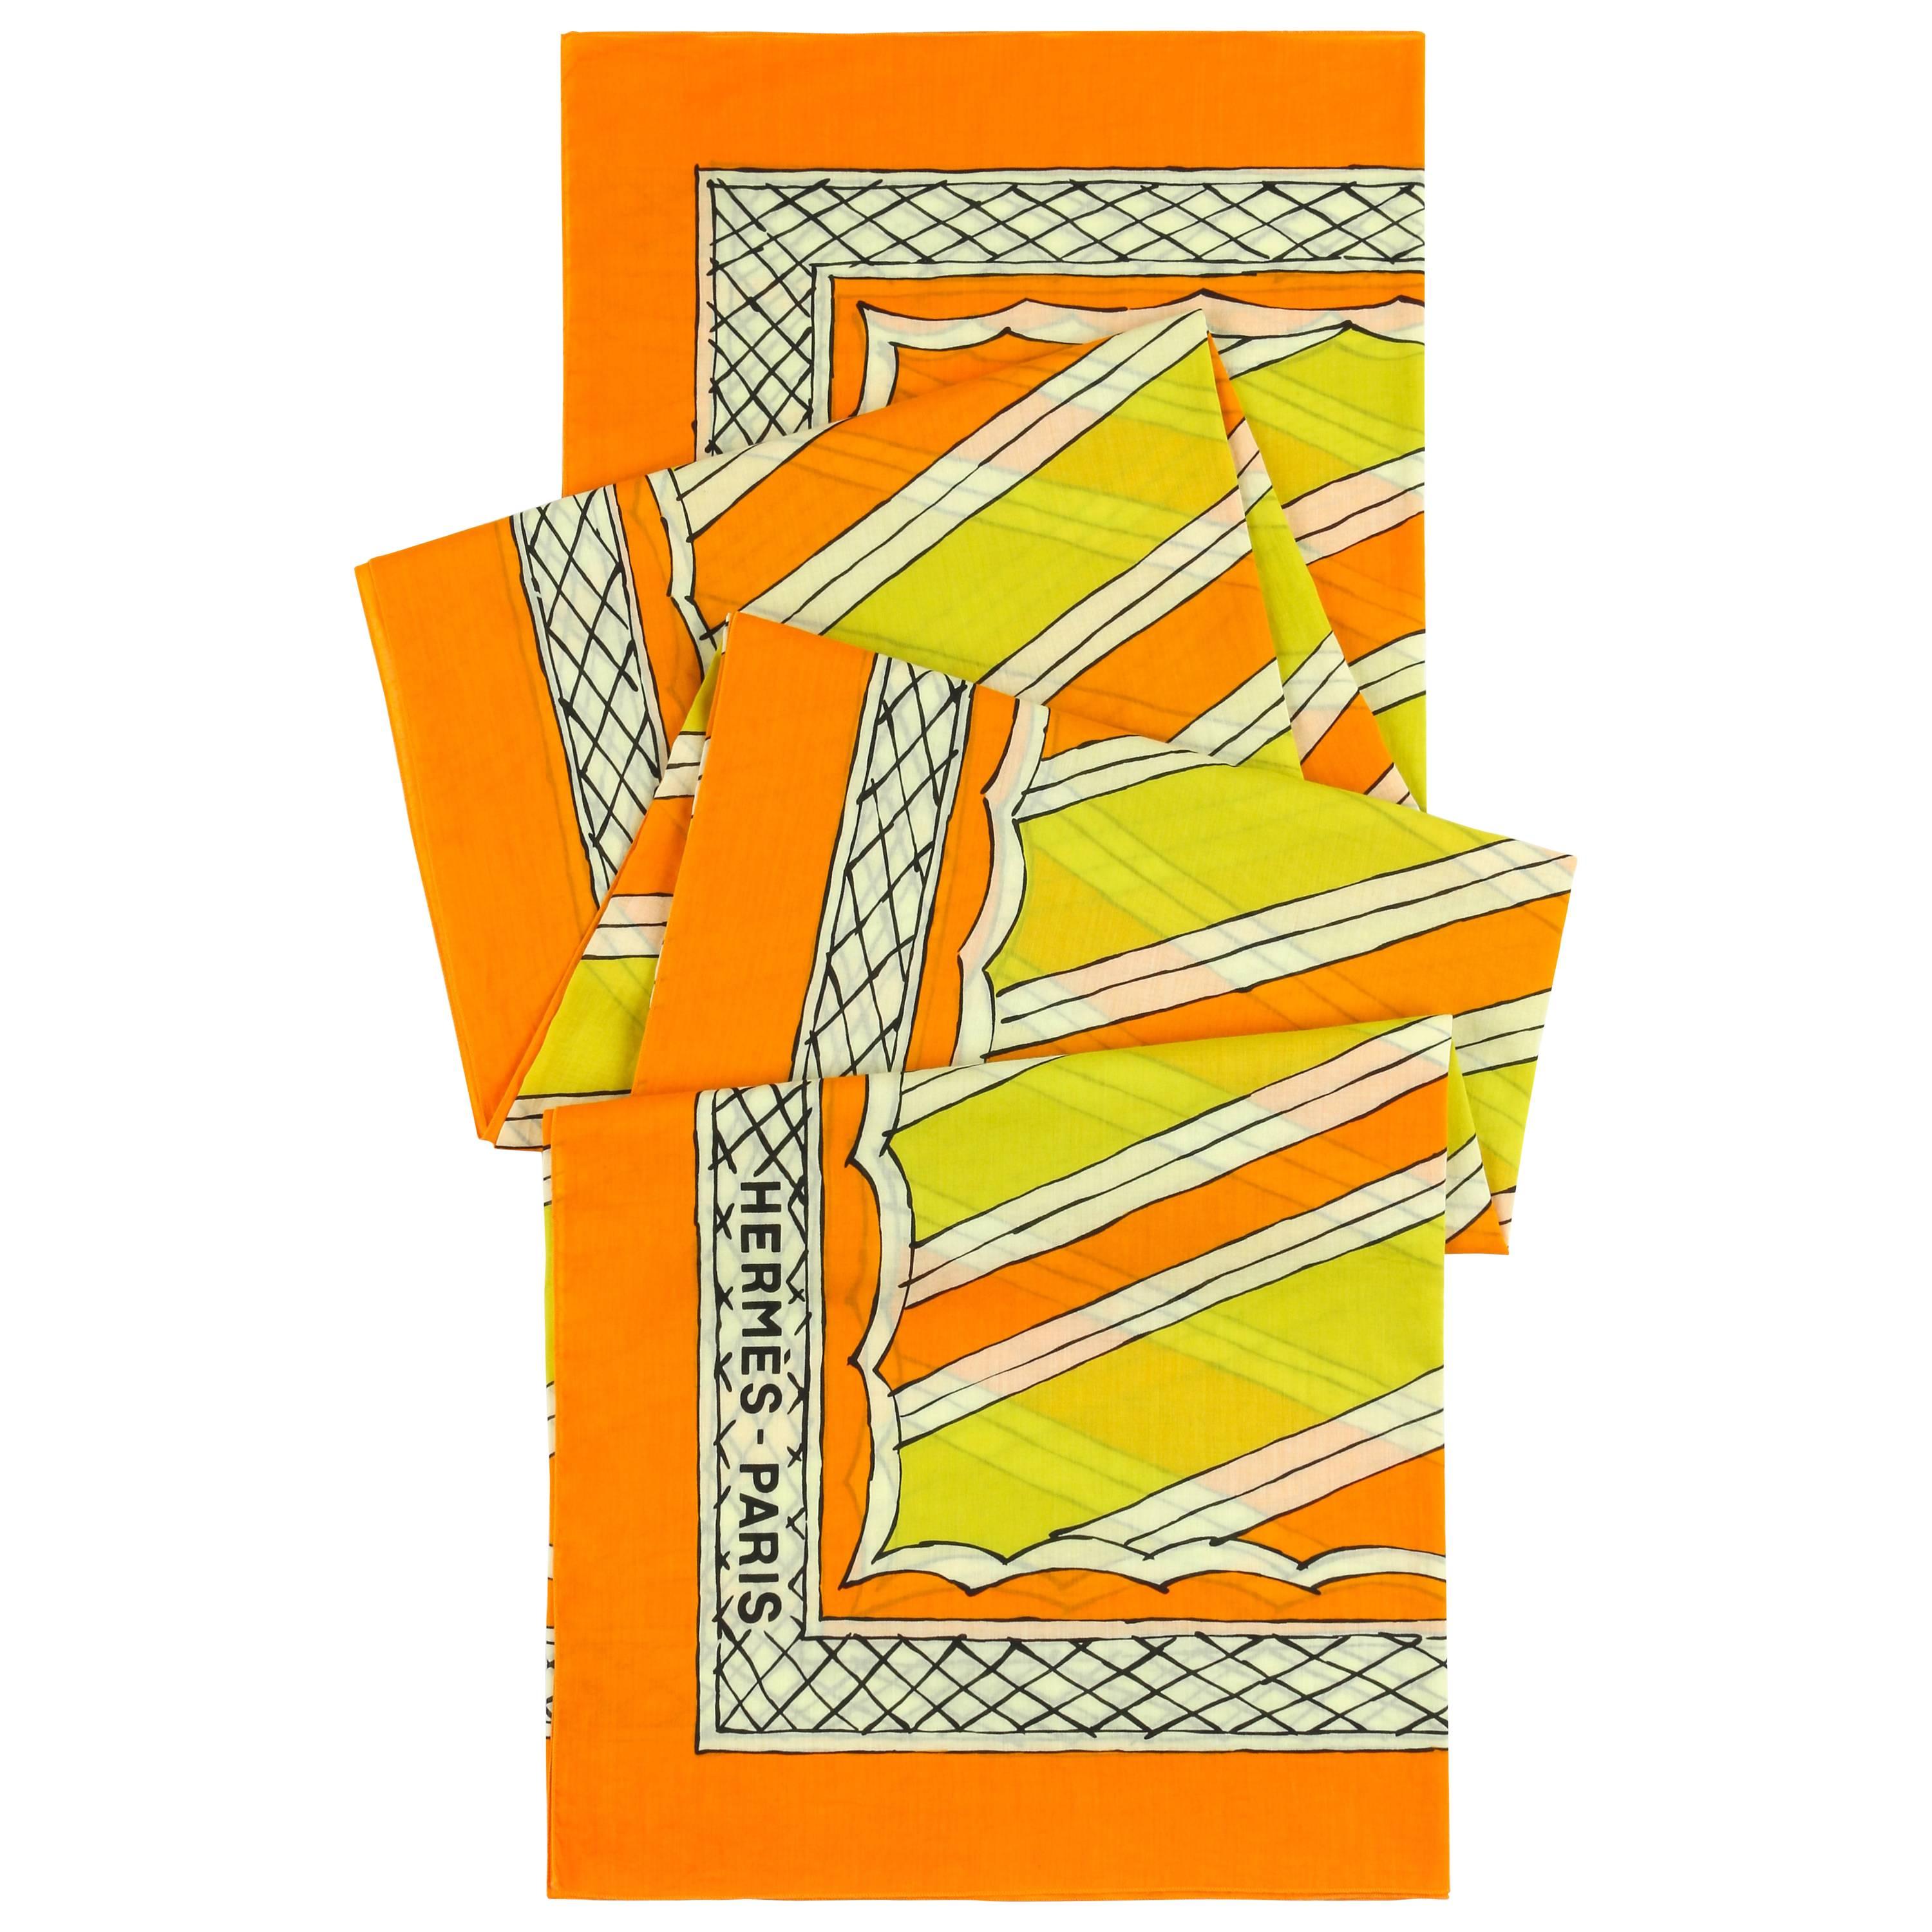 HERMES Giant Orange & Yellow Diagonal Striped Cotton Sarong Scarf Wrap Throw